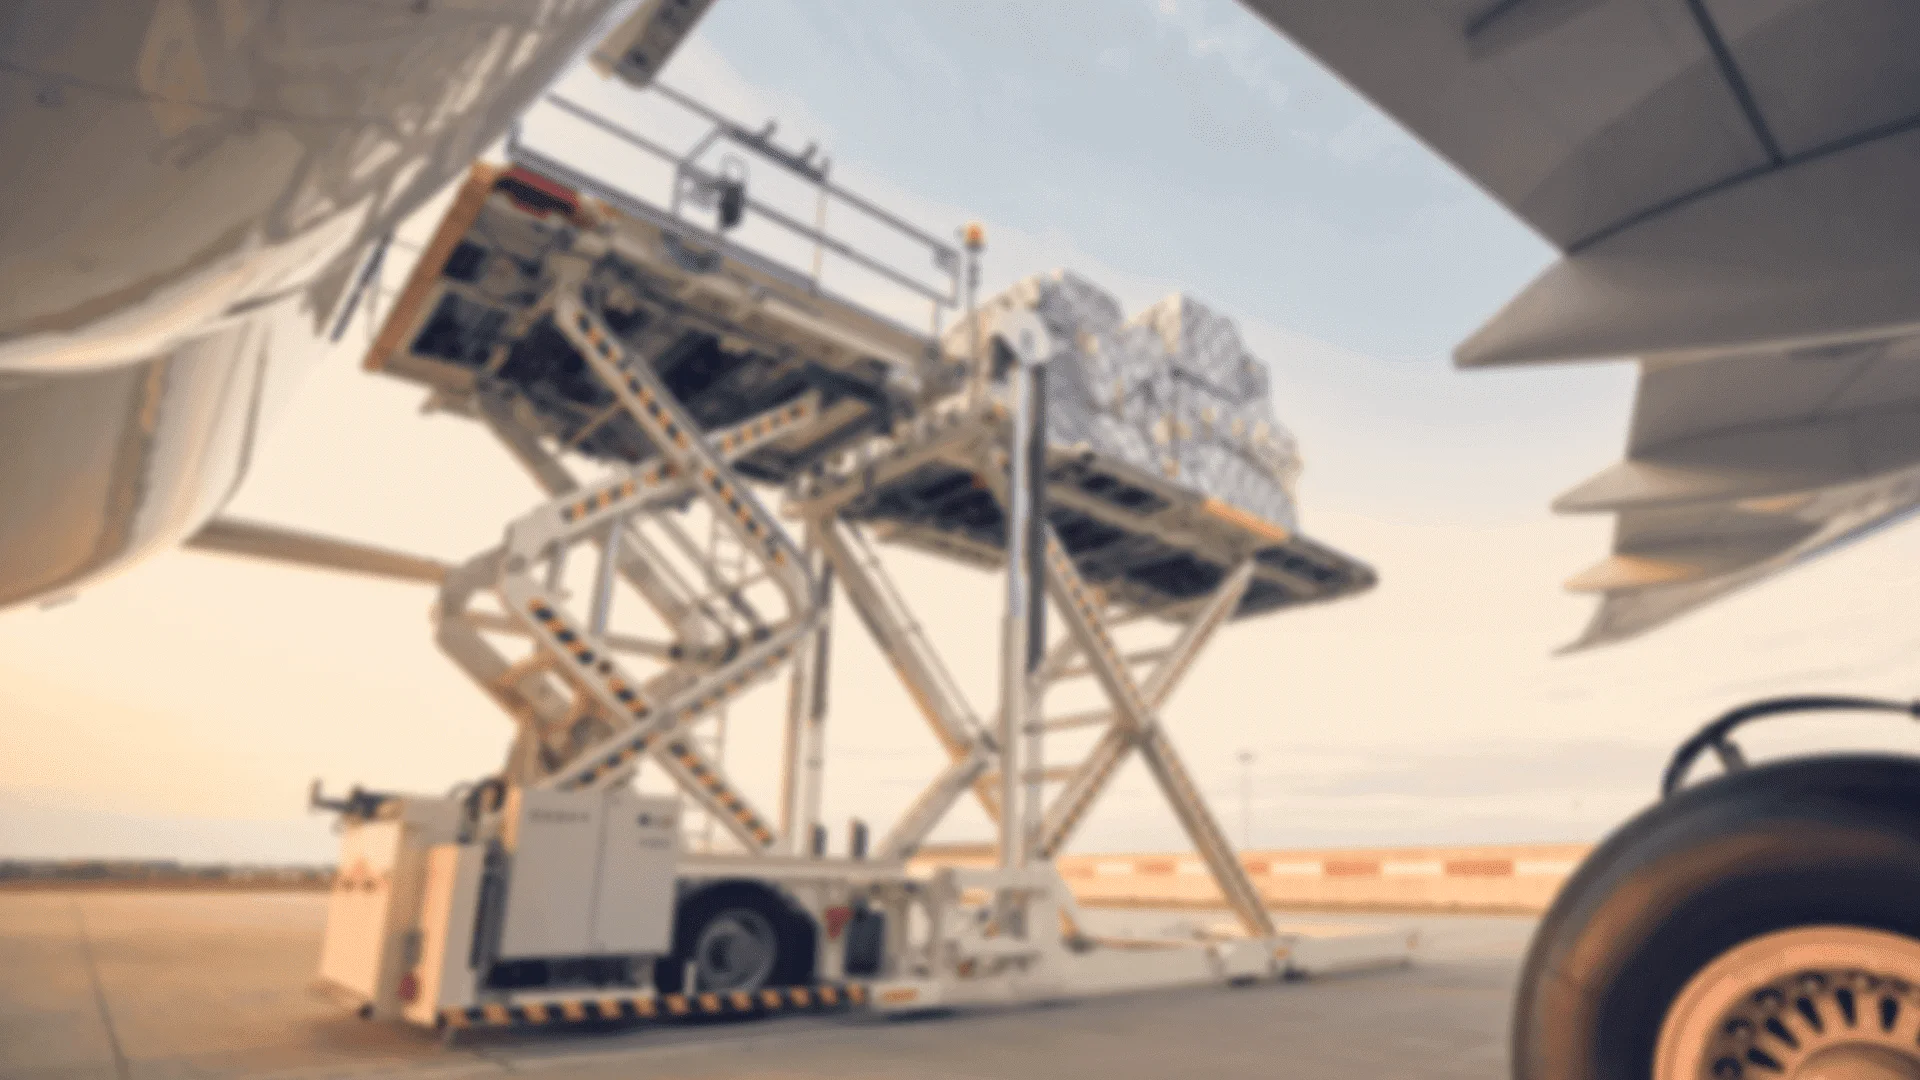 Glaube Logistics Air Freight Companies in Dubai